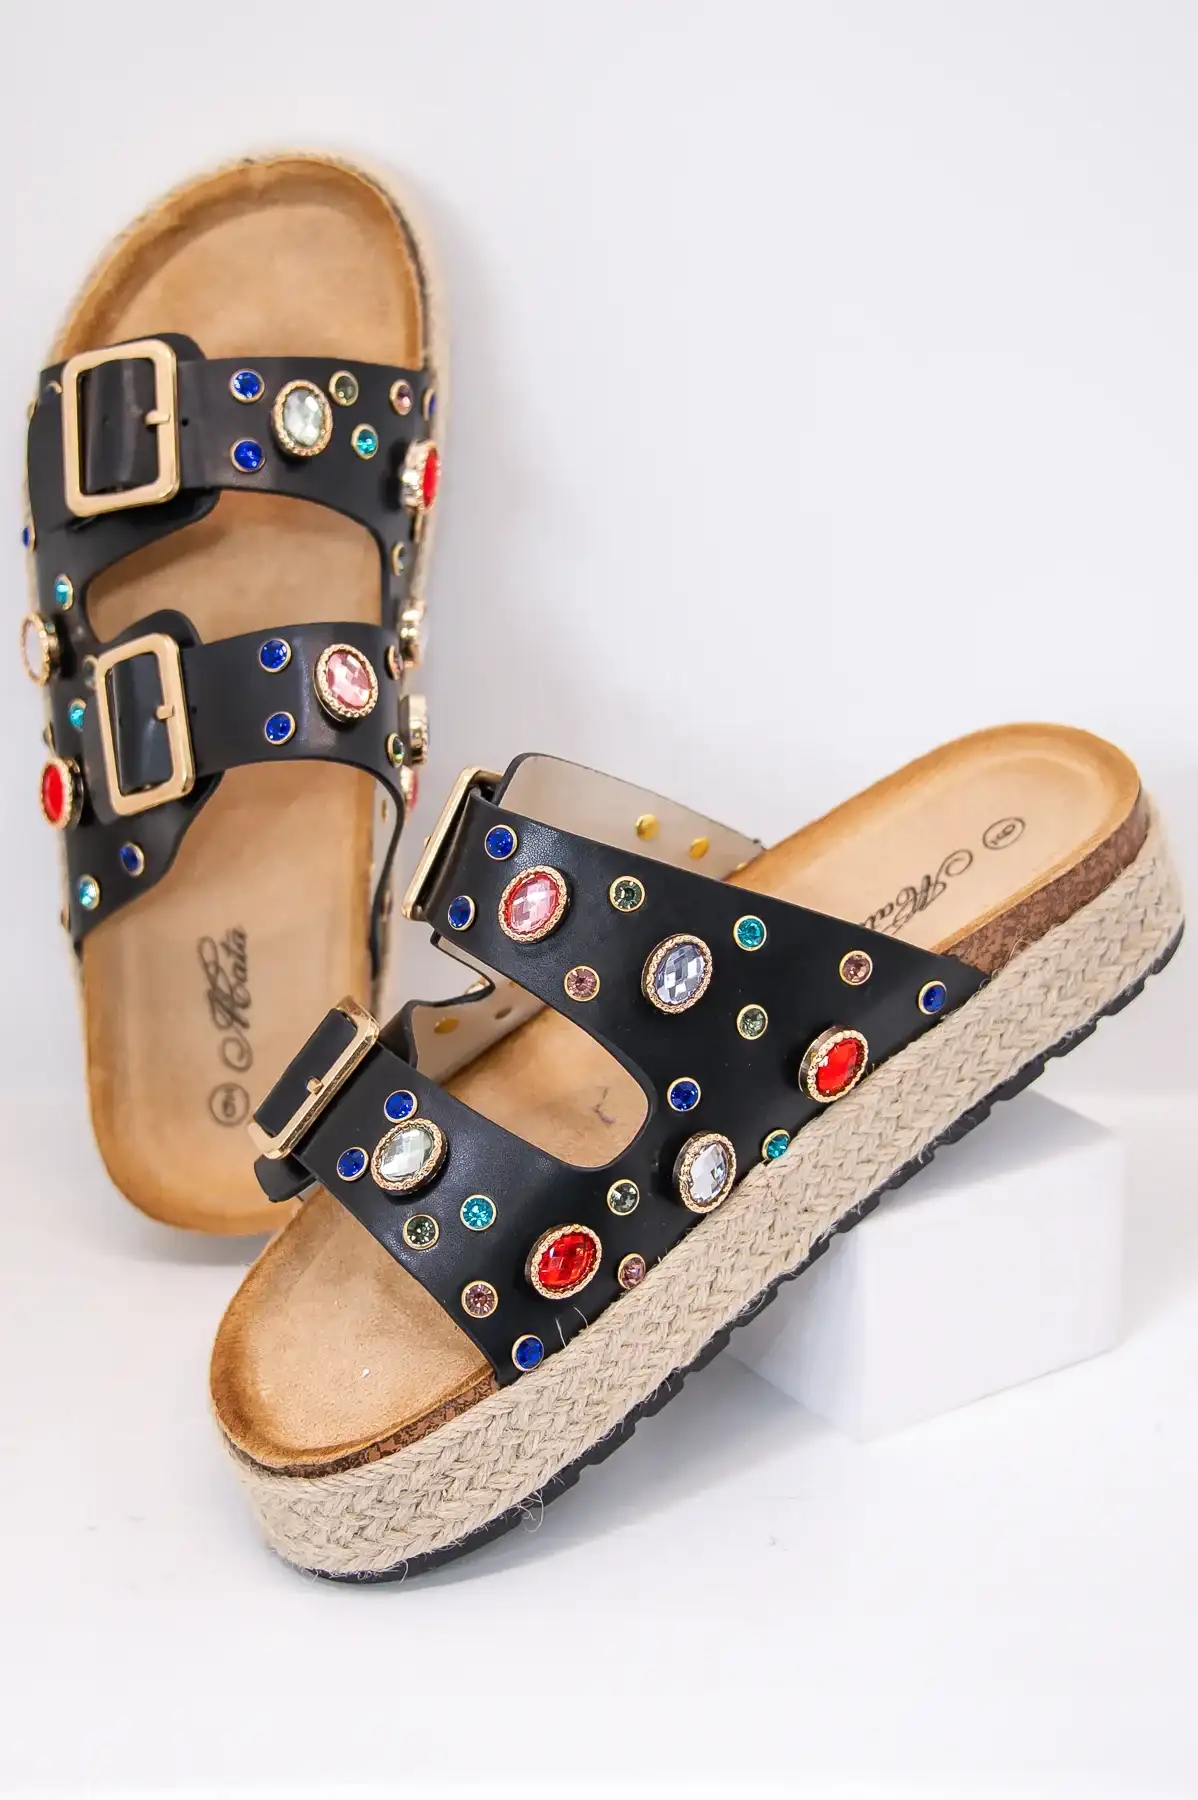 Image of Dazzling Summer Style Black/Multi Color Bling Platform Sandals - SHO2686BK